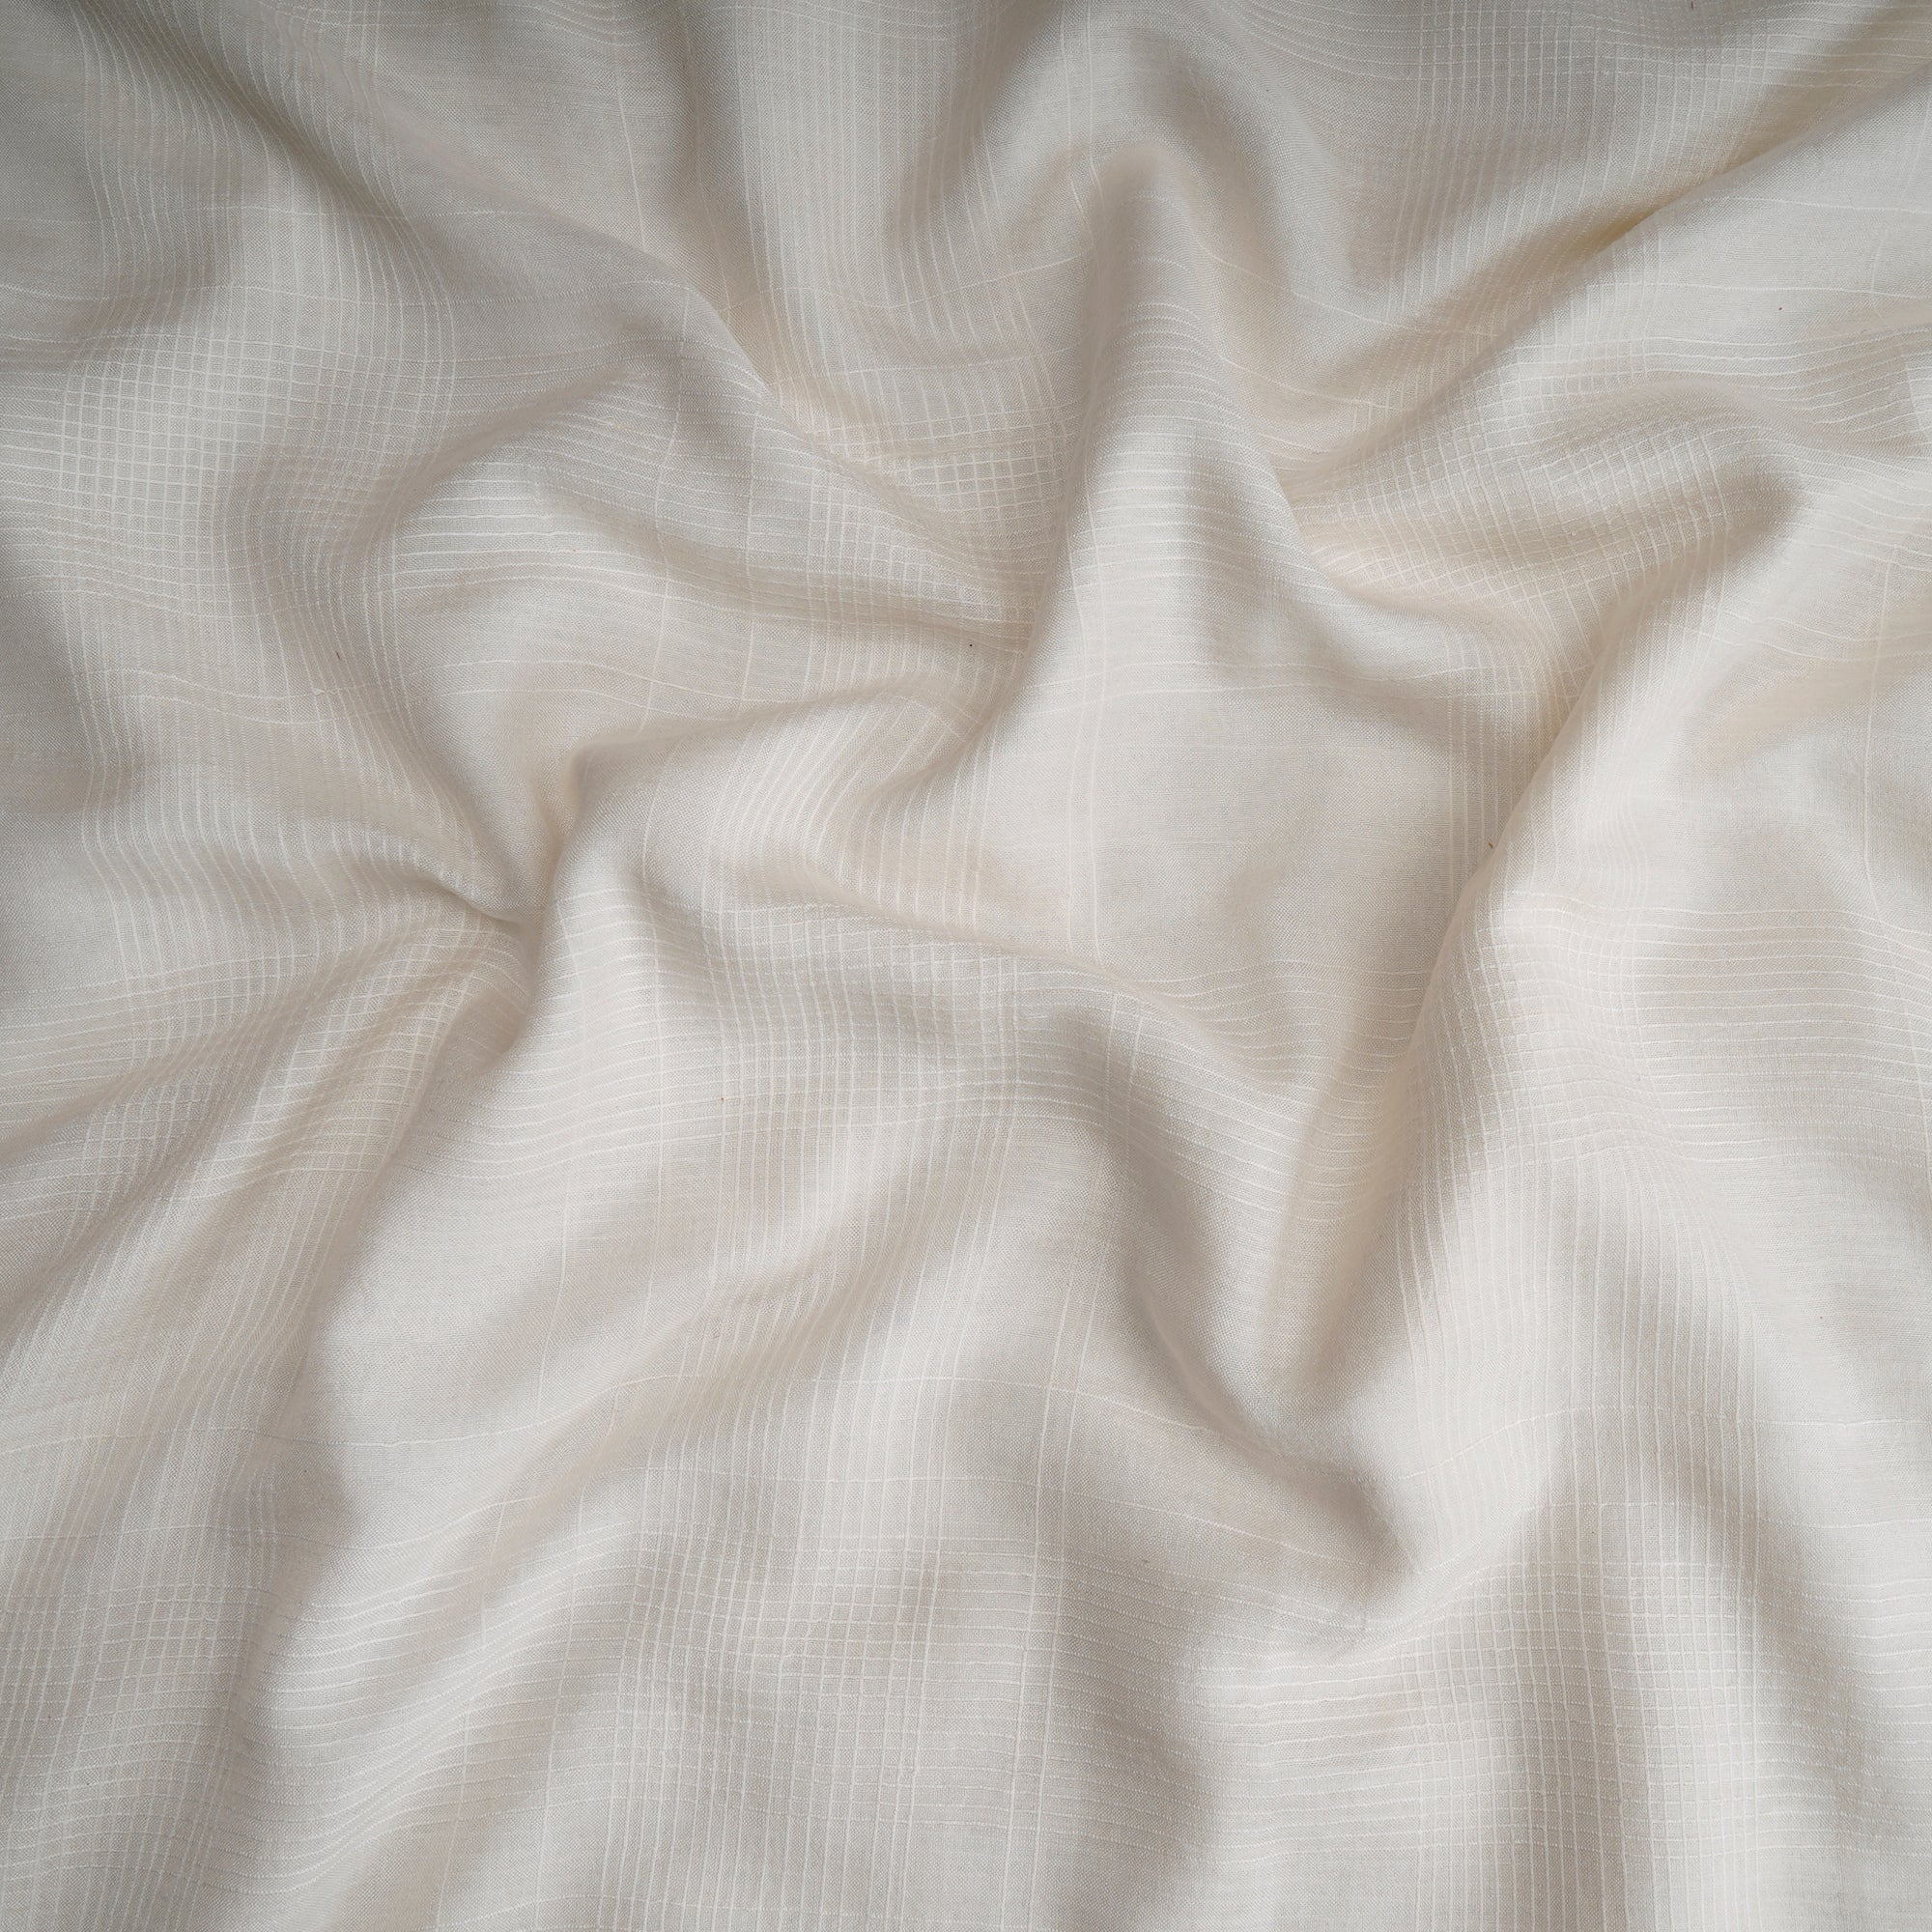 Off-White Color Cotton Silk Fabric with Zari Border